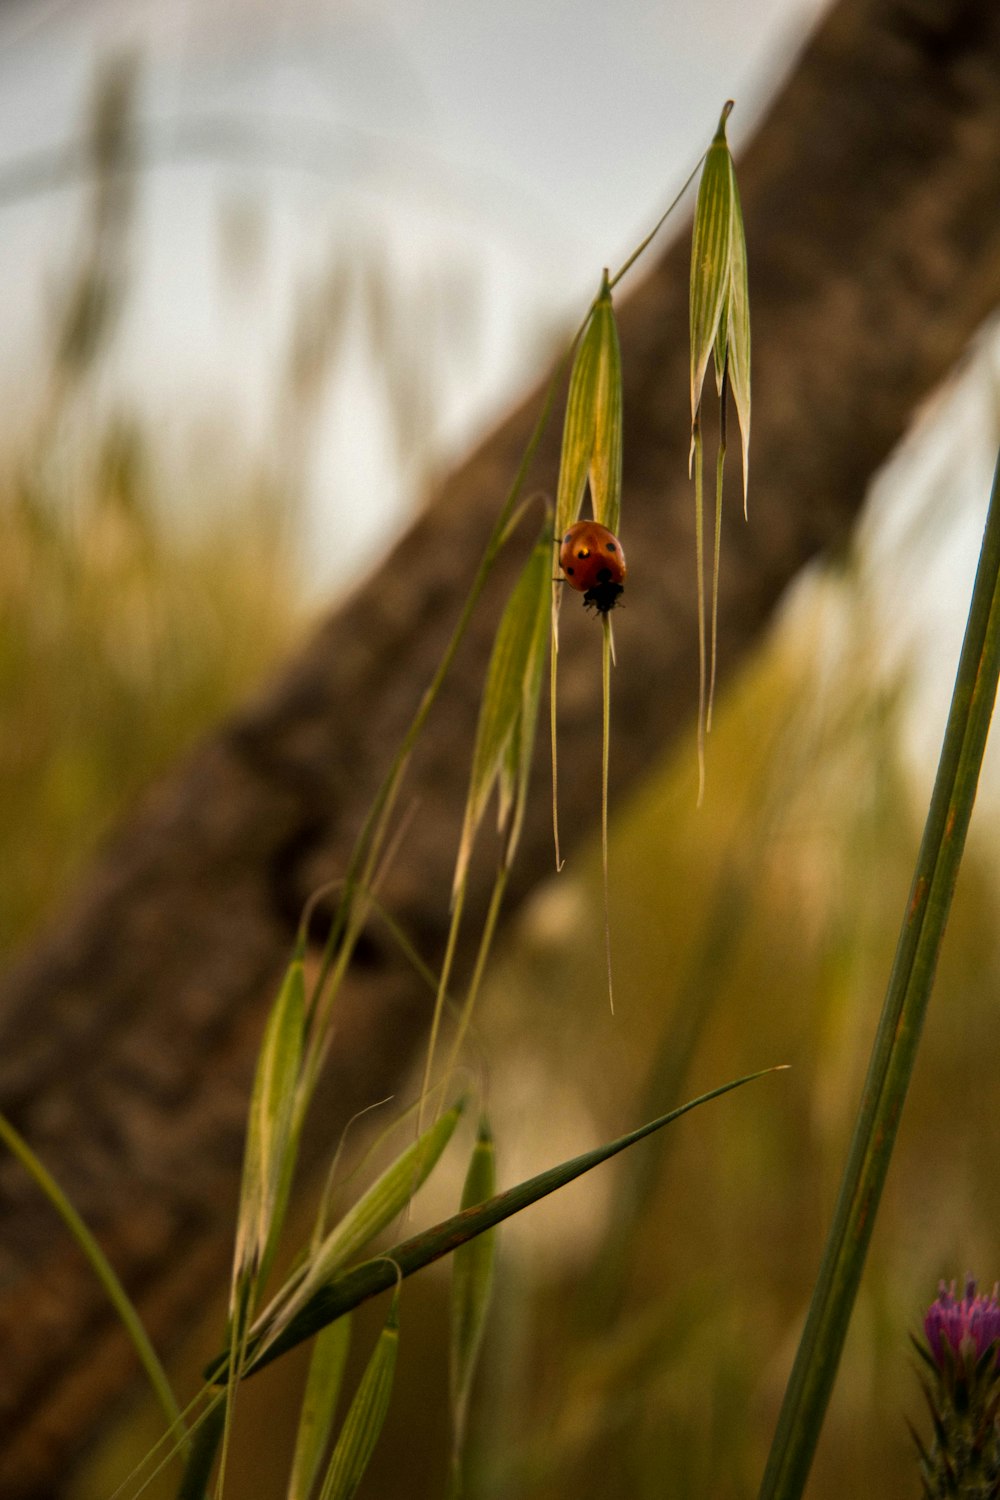 昼間は緑の植物にとまる赤いてんとう虫の写真 Unsplashの無料虫写真